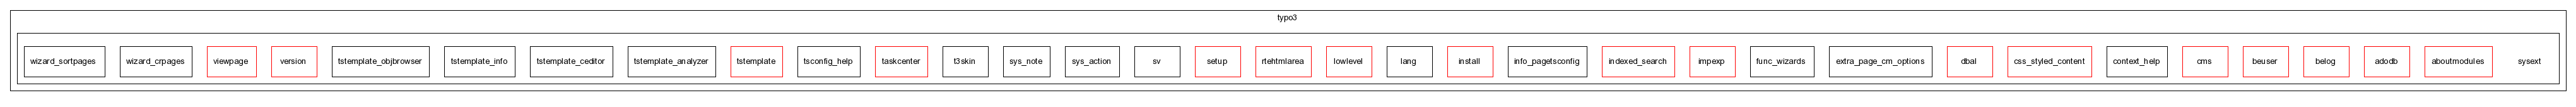 typo3_src-4.0/typo3/sysext/